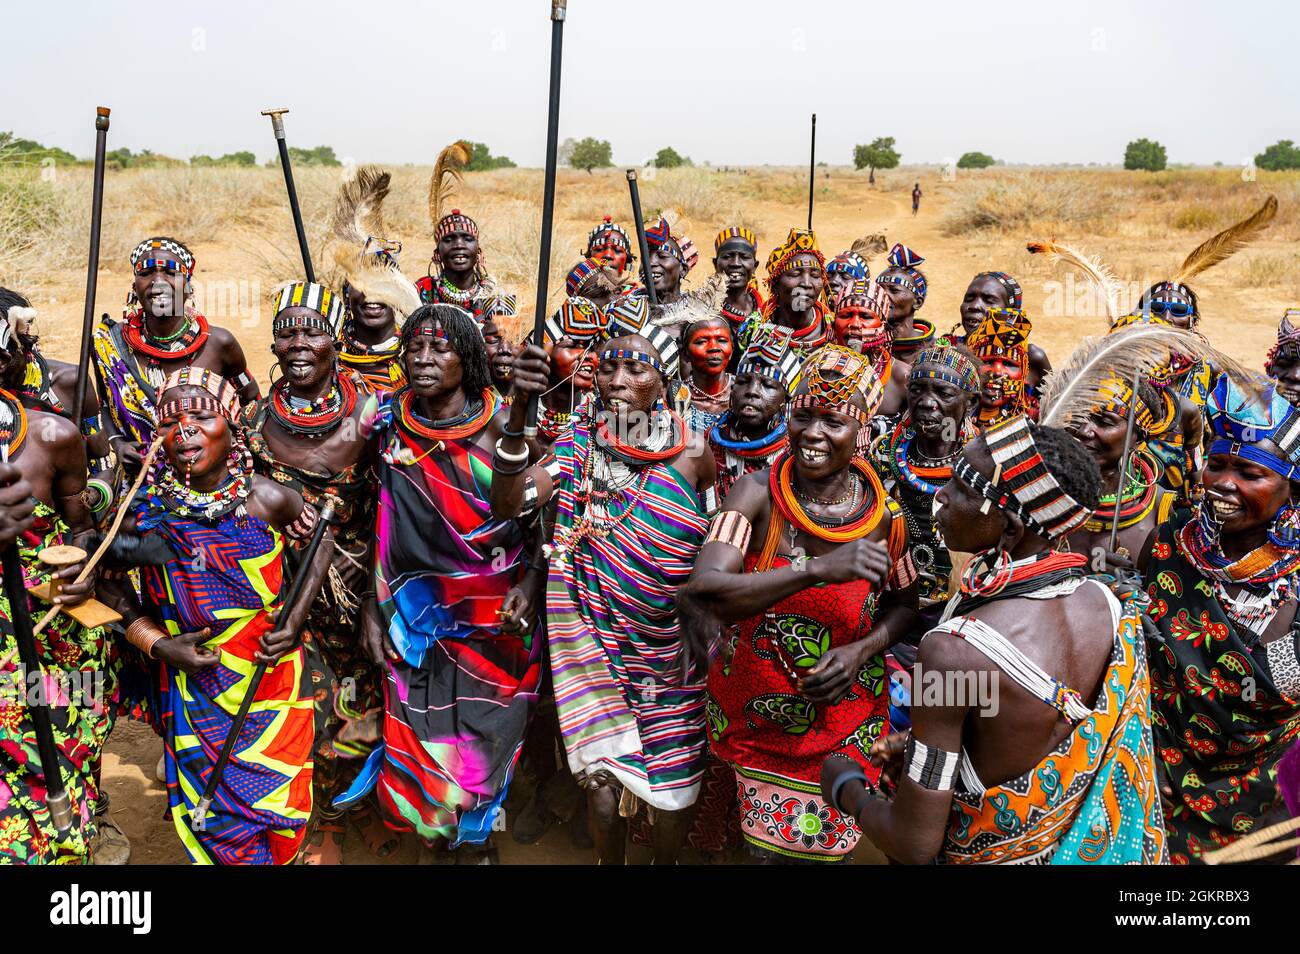 Traditionell gekleidete Frauen des Jiye-Stammes tanzen und singen, Eastern Equatoria State, Südsudan, Afrika Stockfoto